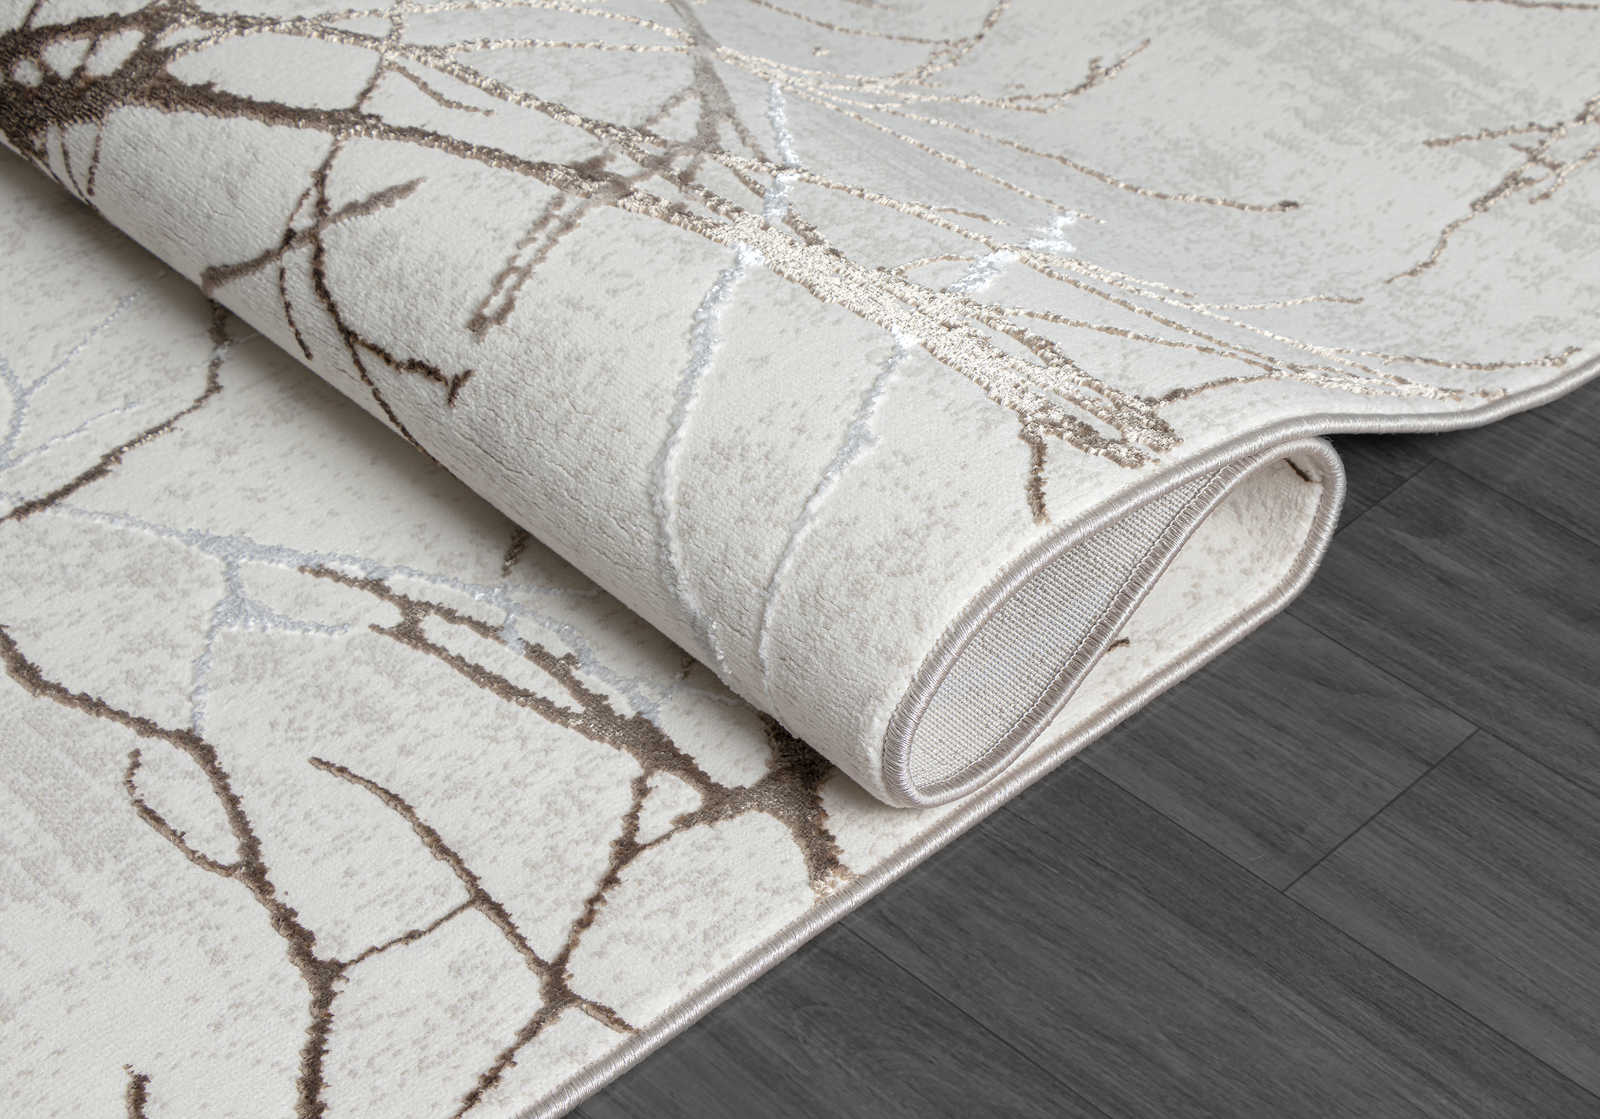             Flauschiger Hochflor Teppich in Creme – 150 x 80 cm
        